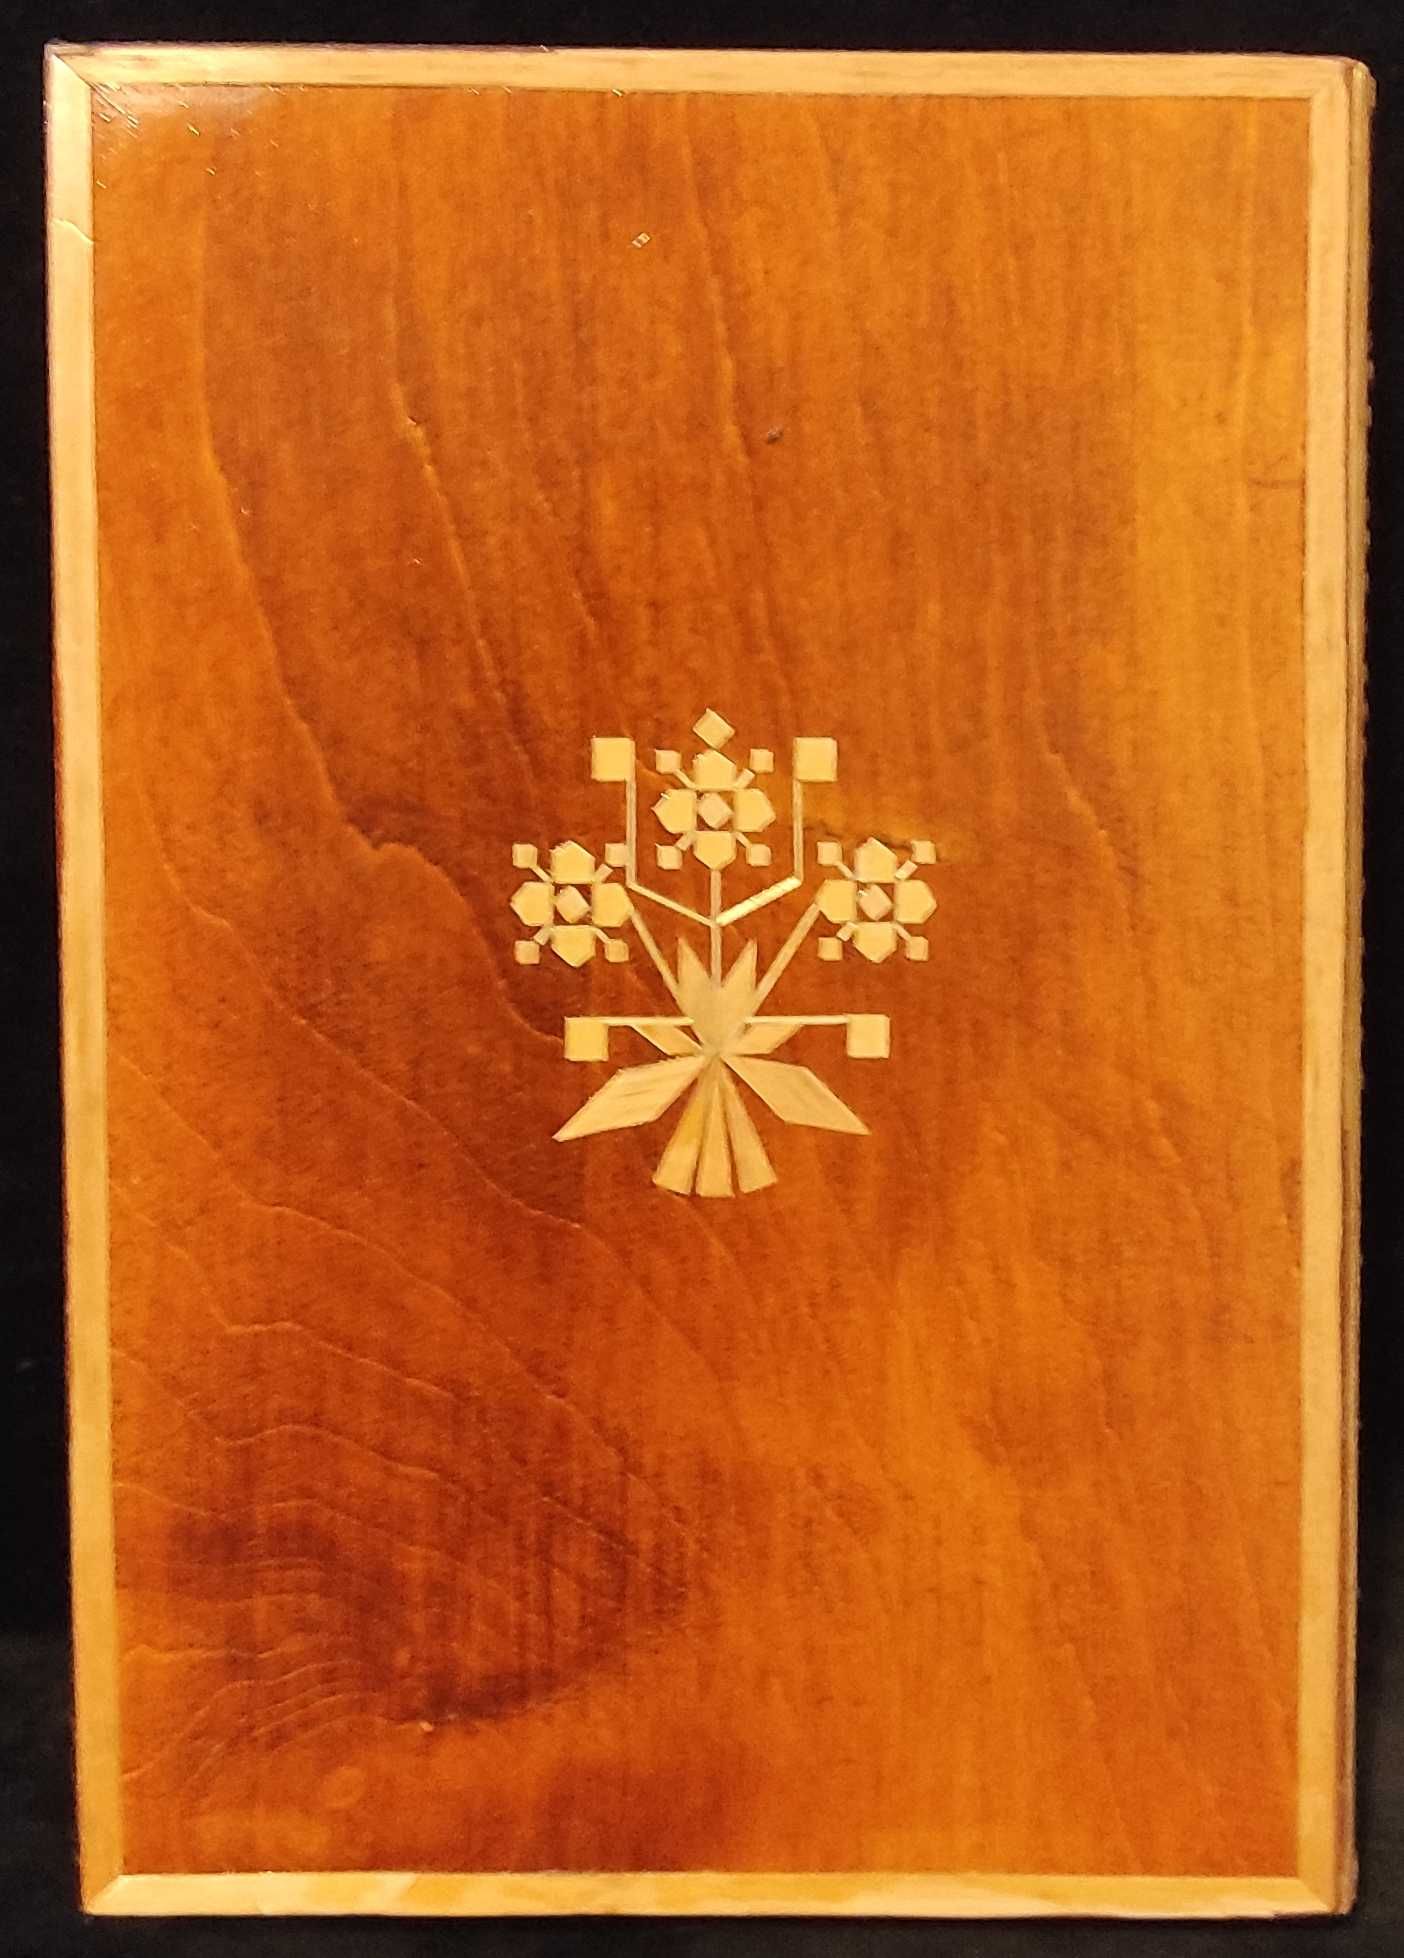 Pudełko ozdobne drewniane inkrustowane słomą - książka - vintage - PRL